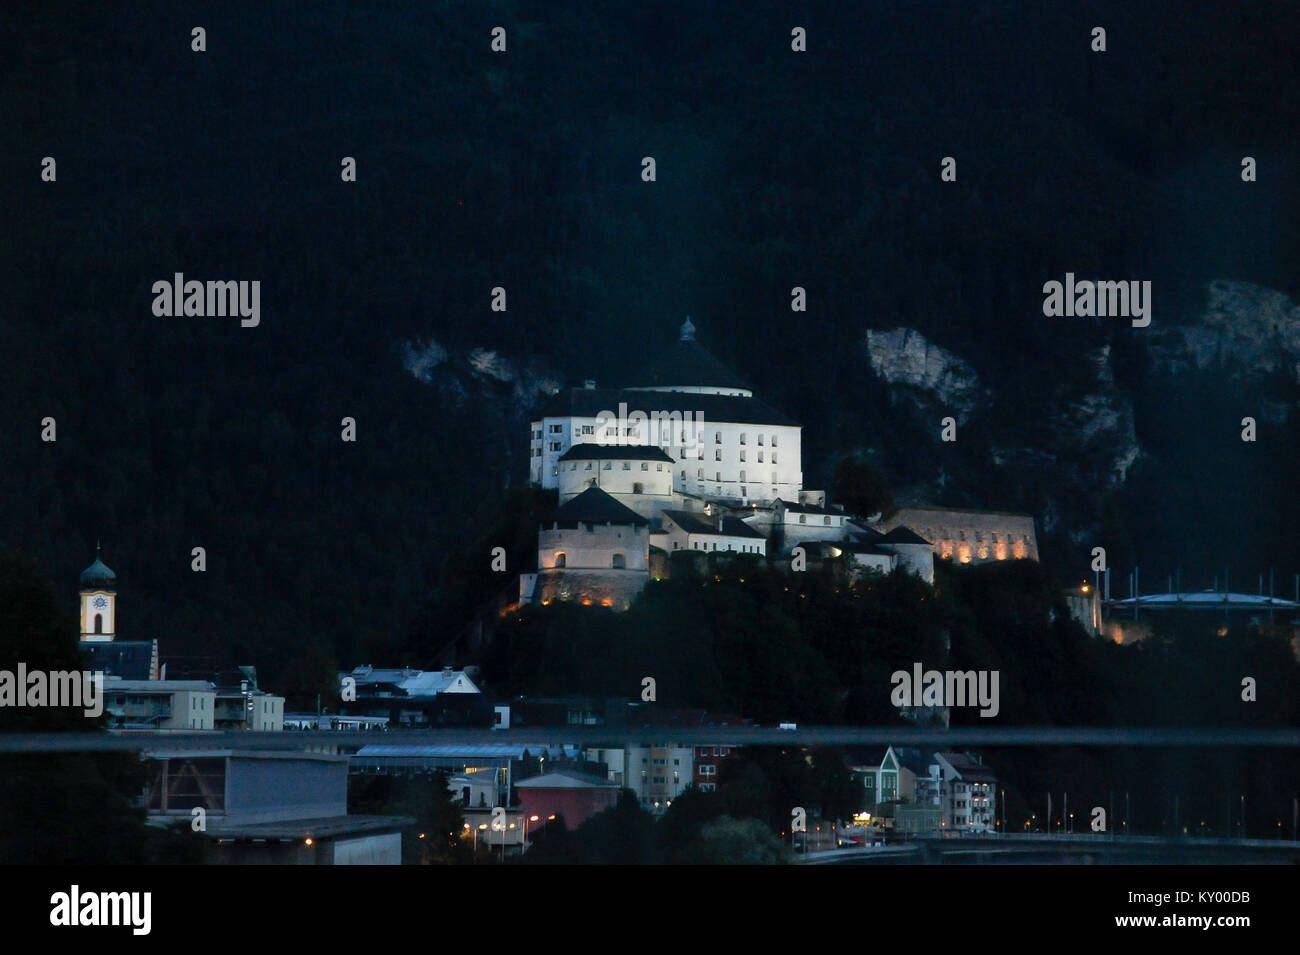 Festung Kufstein (Festung Kufstein) in Kufstein, Tirol, Österreich. 8. August 2016 © wojciech Strozyk/Alamy Stock Foto Stockfoto